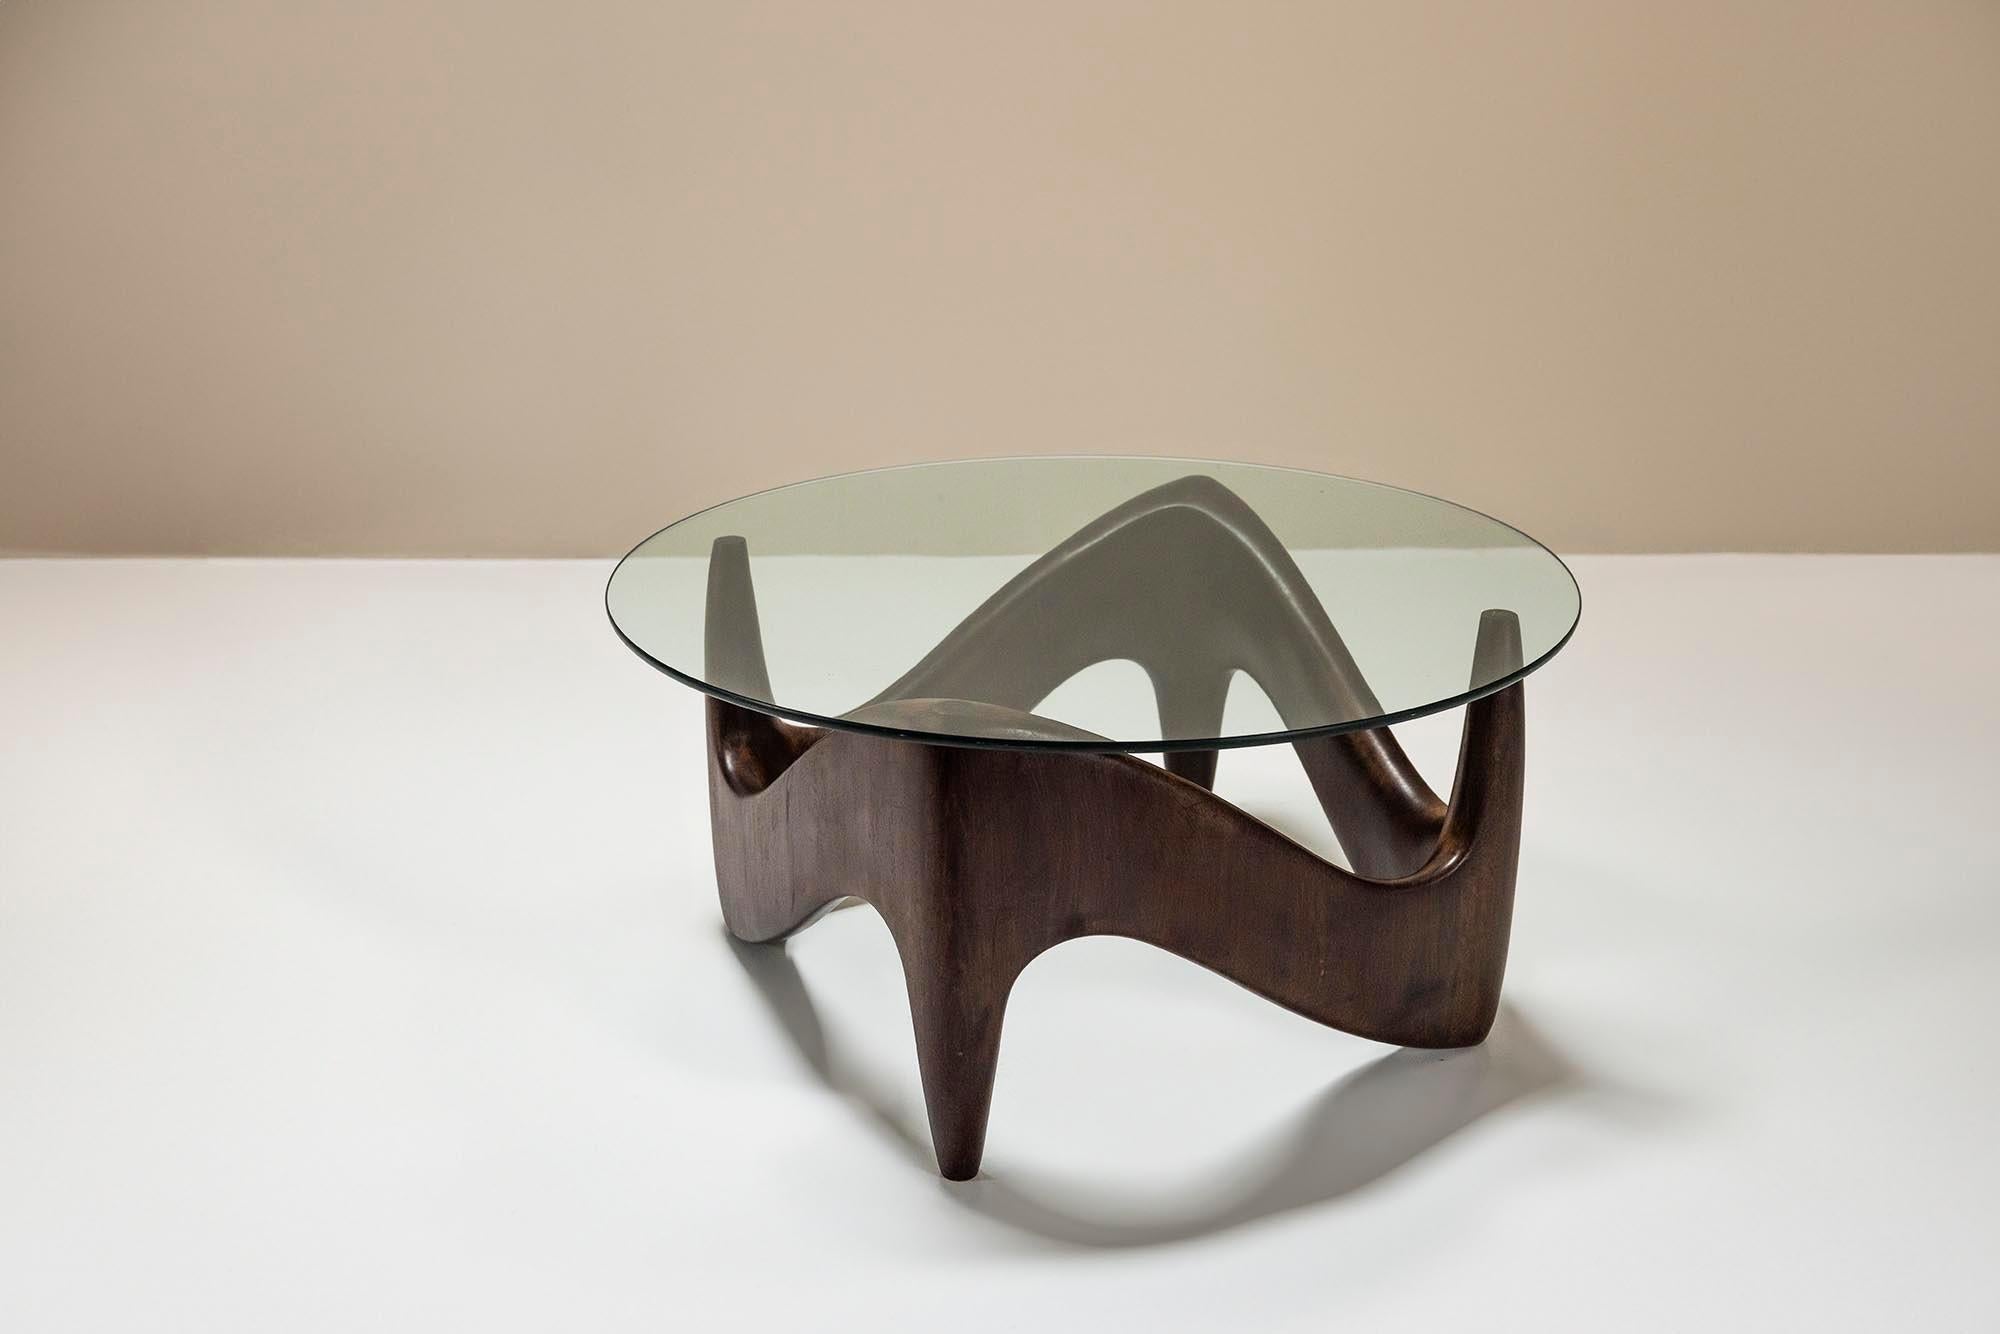 Table basse de forme sculpturale et organique avec une base en bois et un plateau en verre. Le design ludique est une combinaison d'une base de forme carrée, bien que si vous la regardez différemment, elle peut également ressembler à un triangle, le